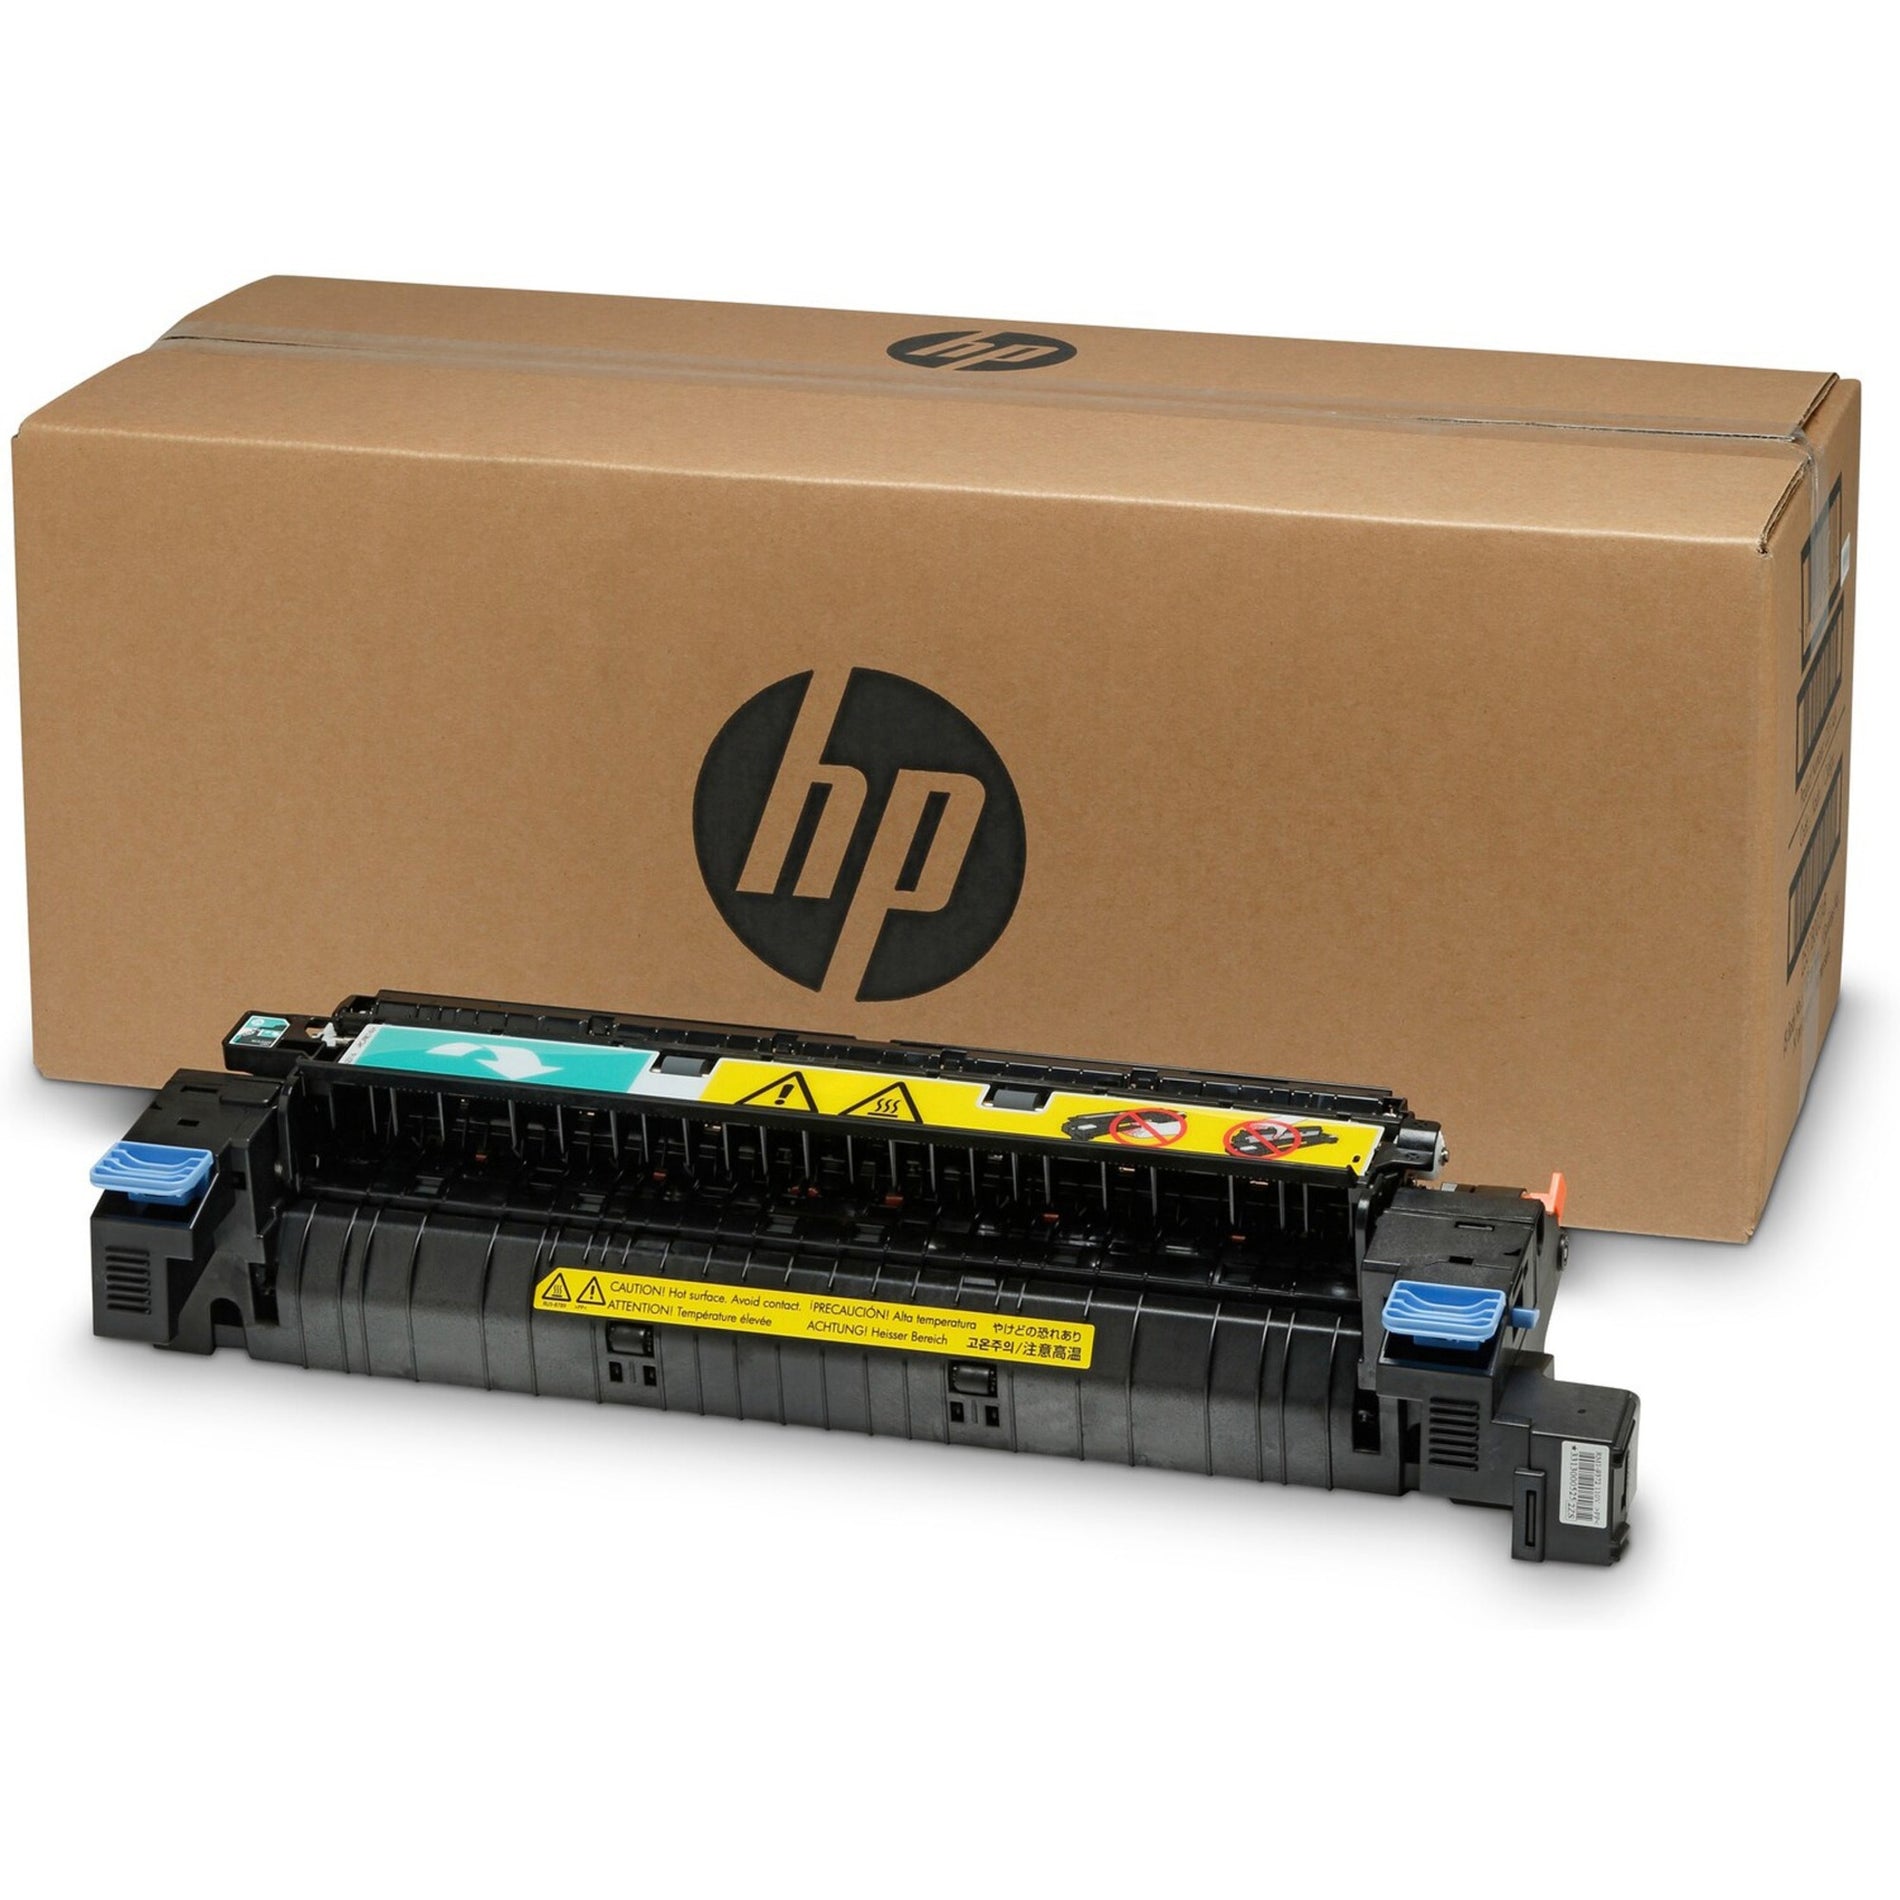 HP CE514A LaserJet 110V Maintenance Kit - 150000 Pages, Color Laser